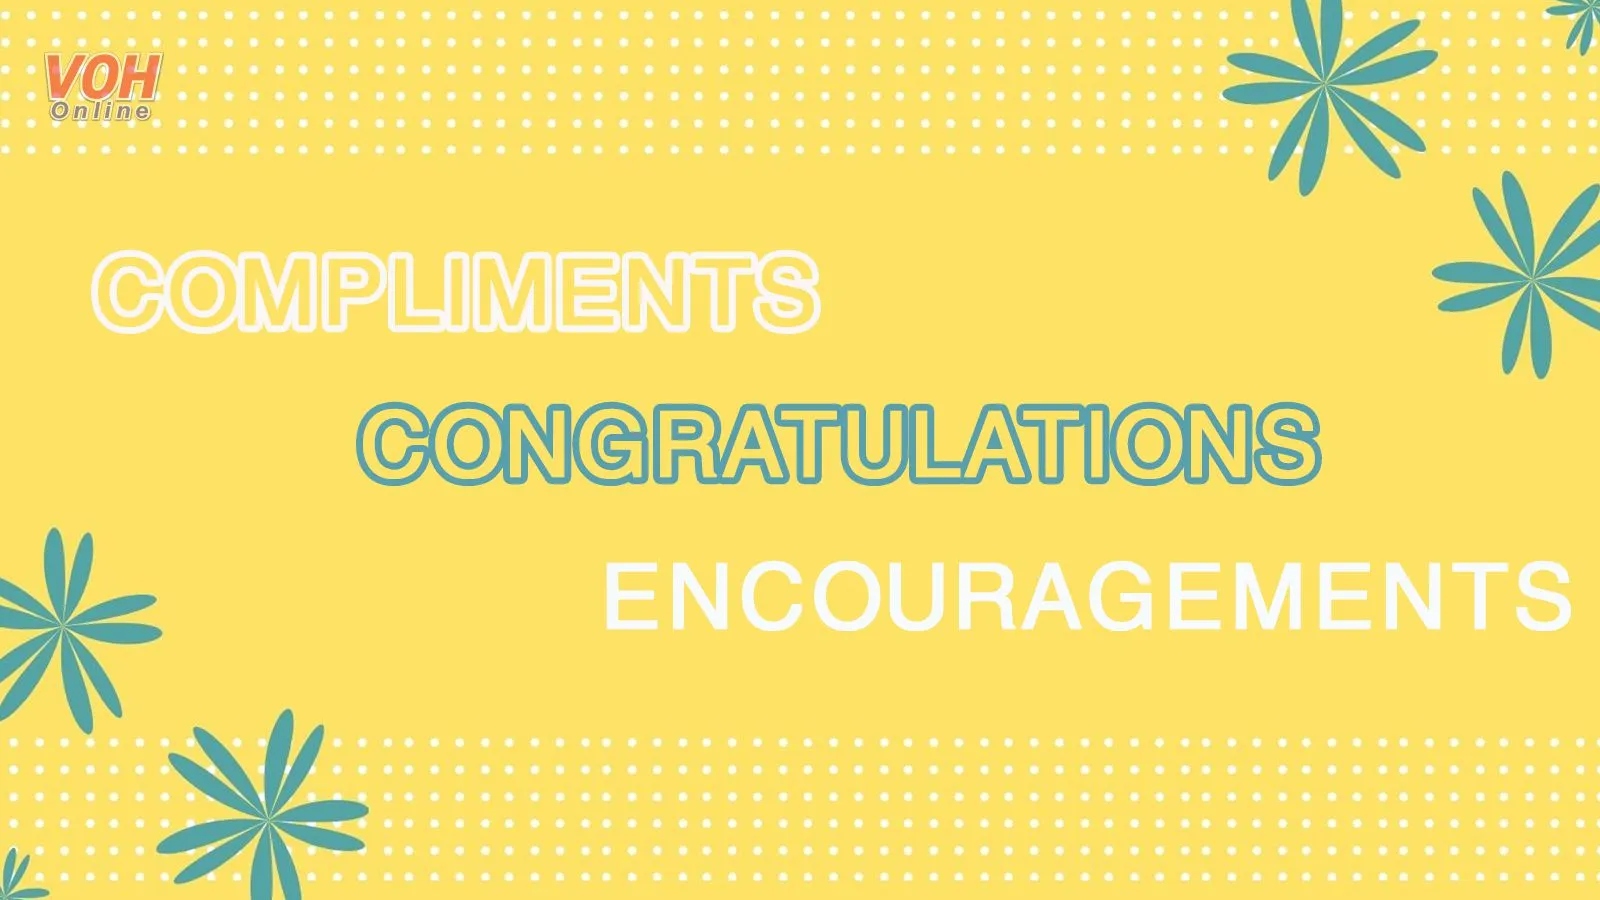 Danh sách lời khen ngợi (compliments), chúc mừng (congratulations) và động viên (encouragements)